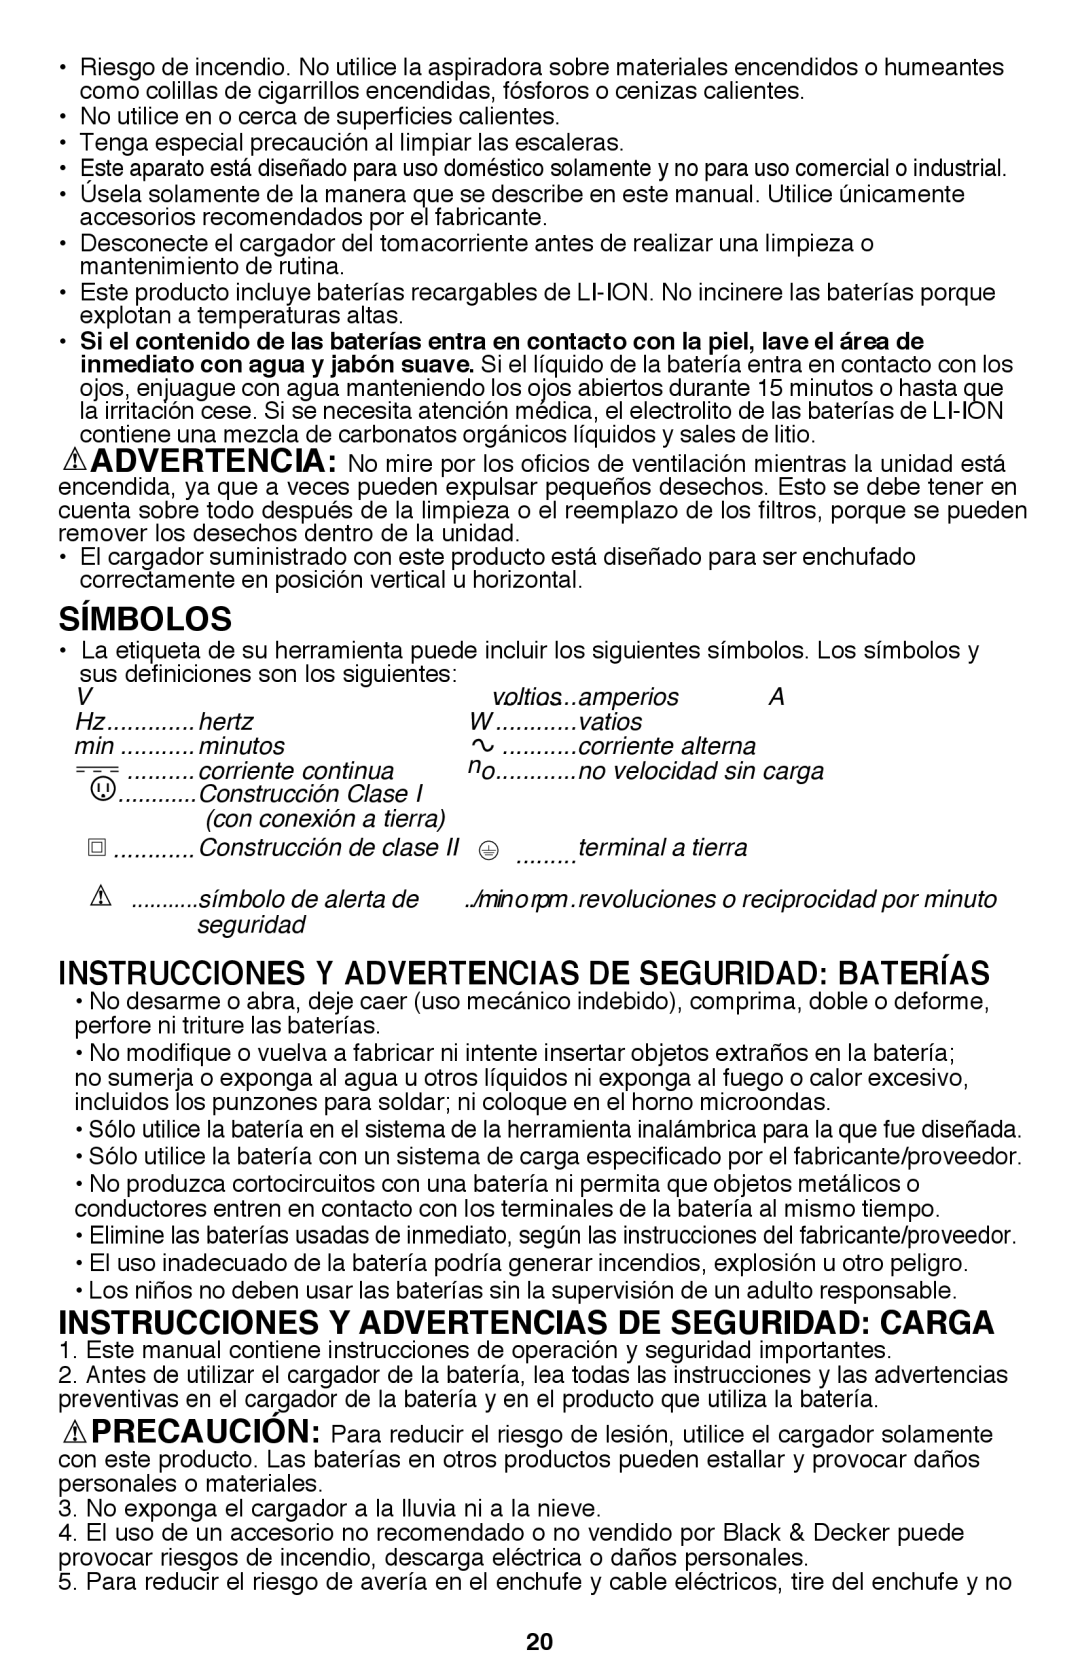 Black & Decker BDH2000L instruction manual Símbolos, Instrucciones Y Advertencias De Seguridad Carga 